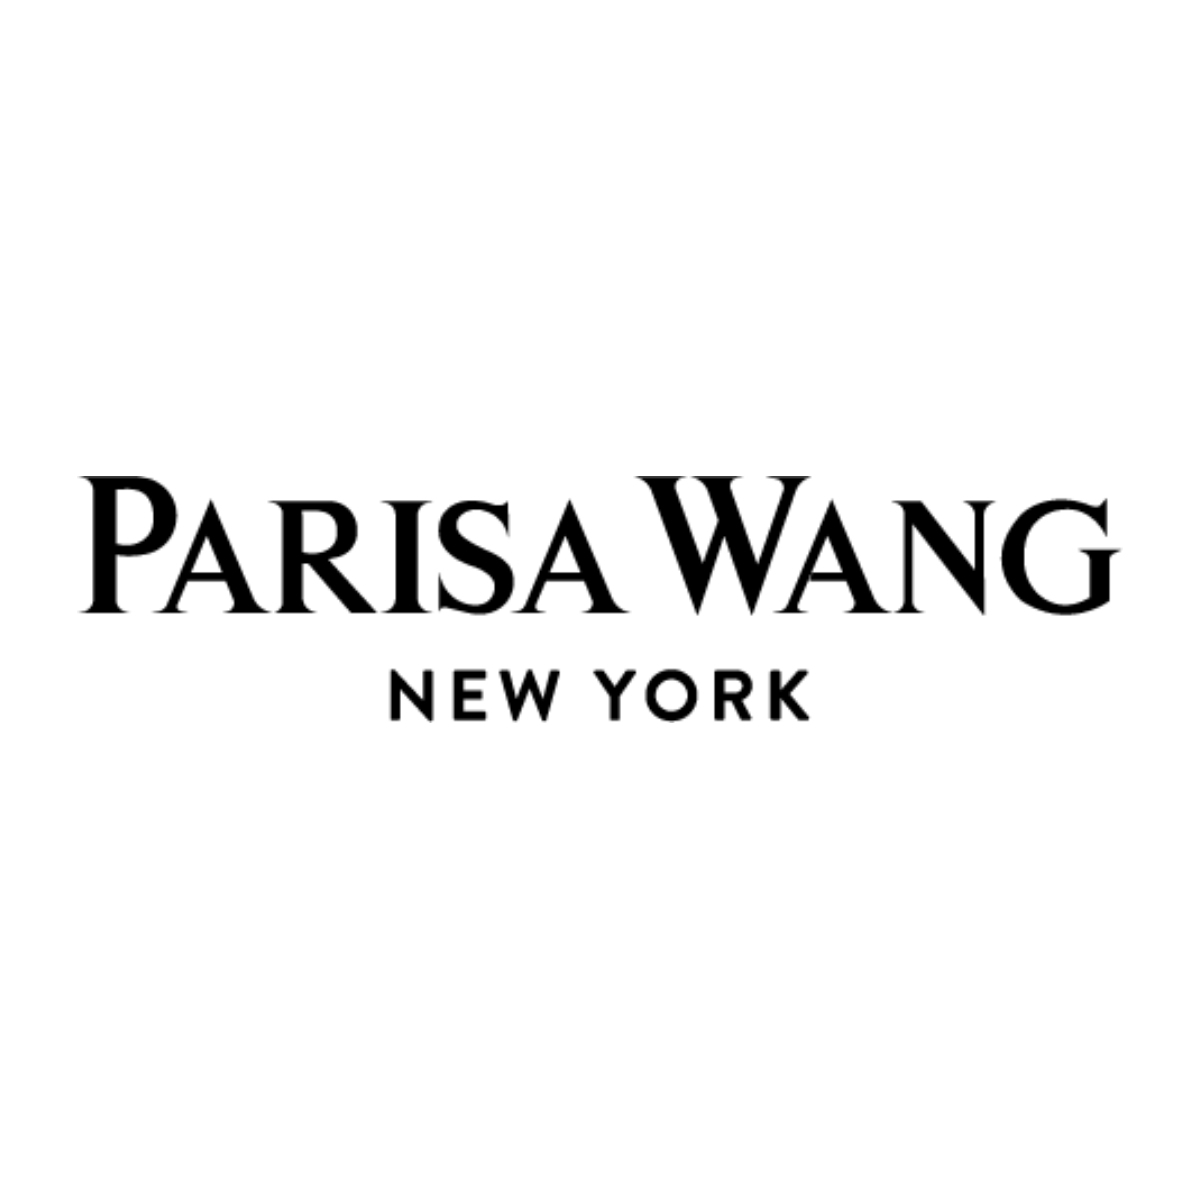 Parisa Wang